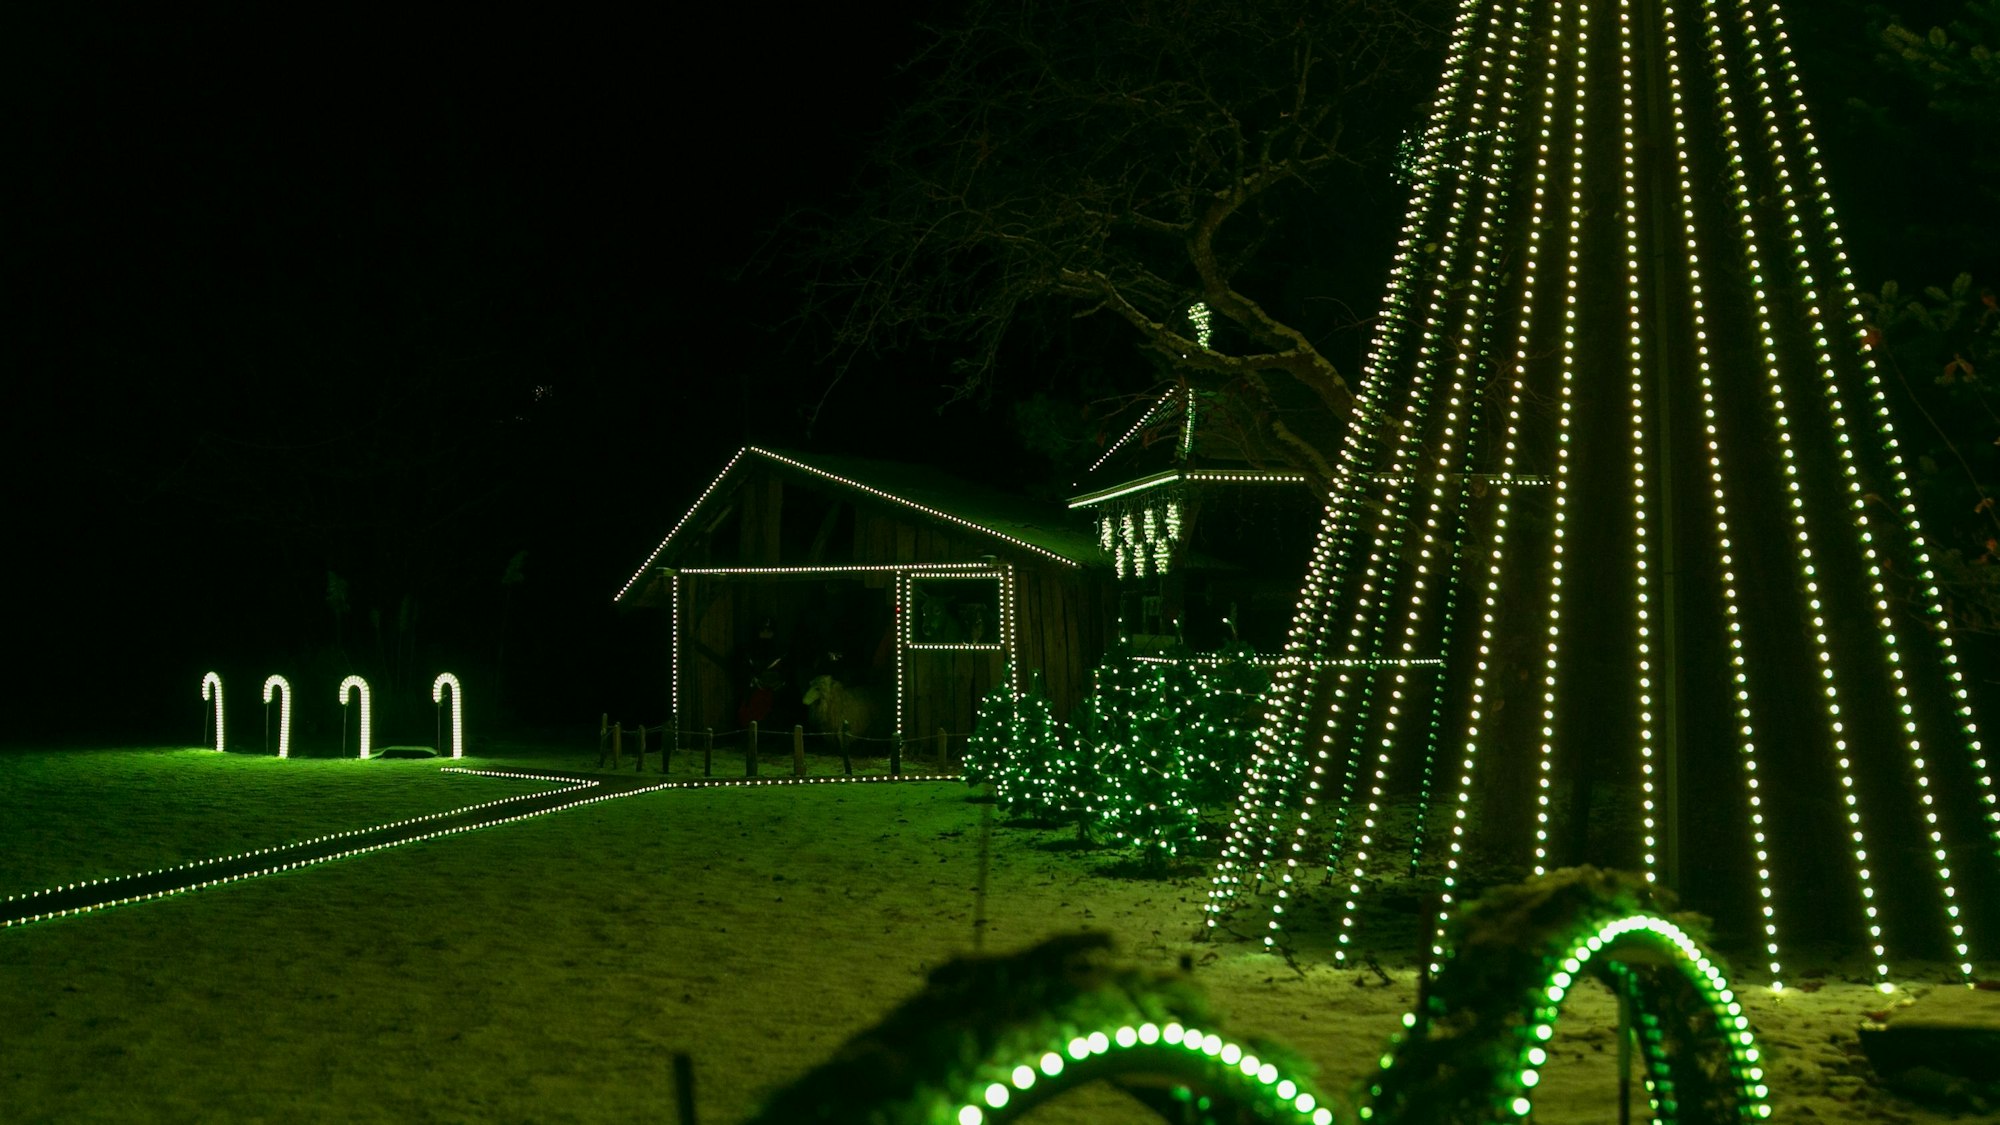 In einem Garten sind Holzhütten von grün leuchtenden Lichterketten umrahmt. Auch ein Weihnachtsbaum aus Lichterketten leuchtet grün.